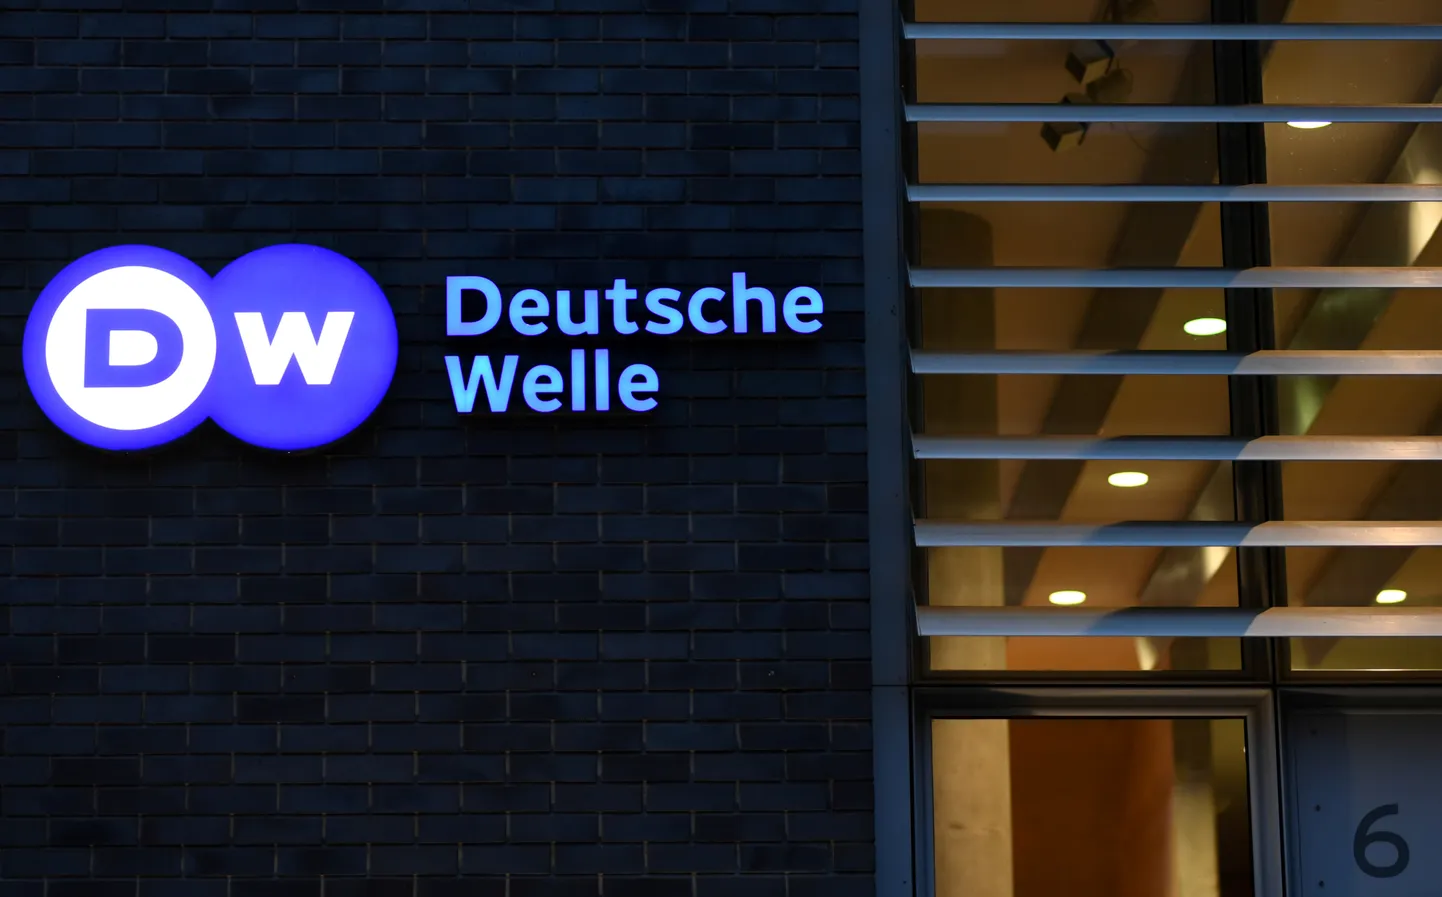 Vācijas starptautiskās raidsabiedrības “Deutsche Welle” logo.